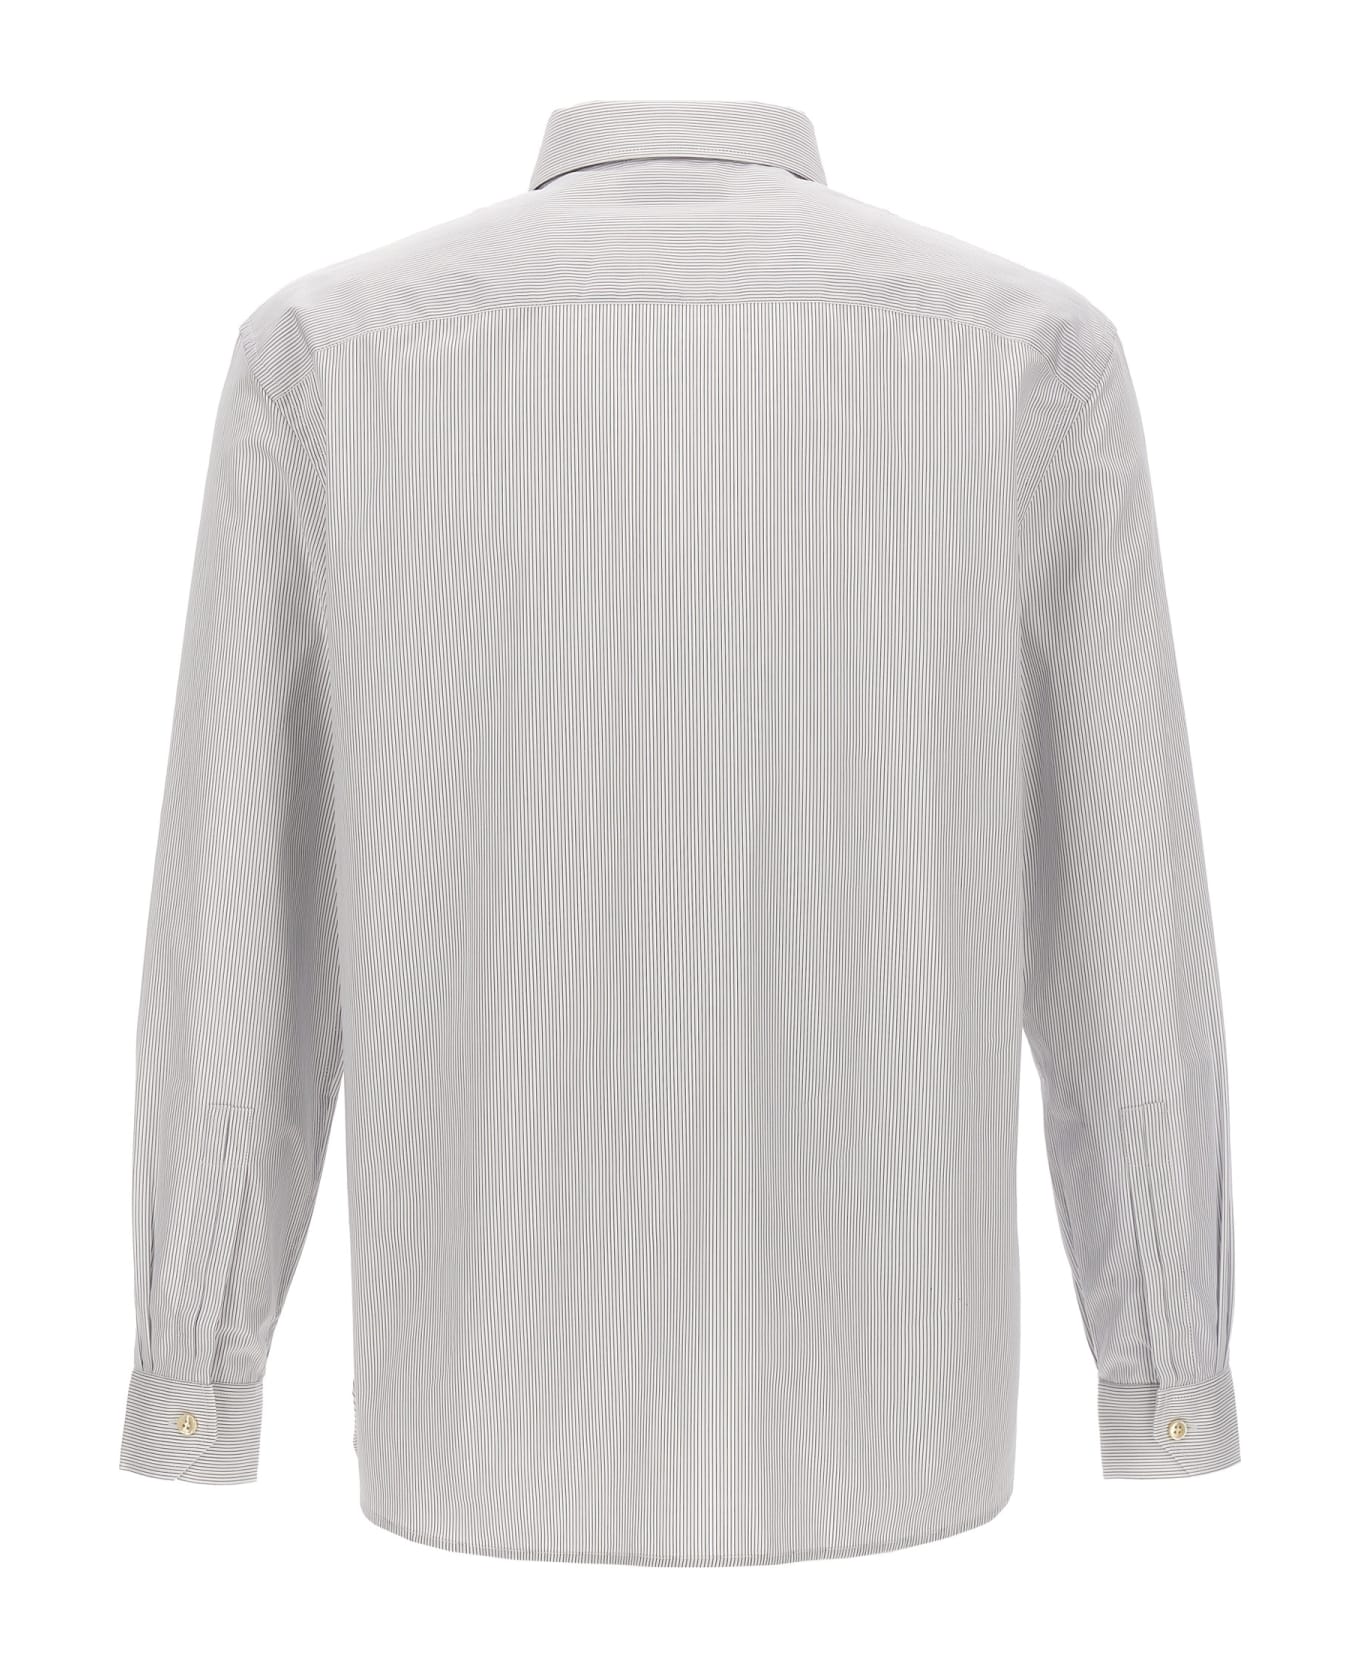 Saint Laurent Striped Cotton Shirt - WHITE/LIGHT BLUE